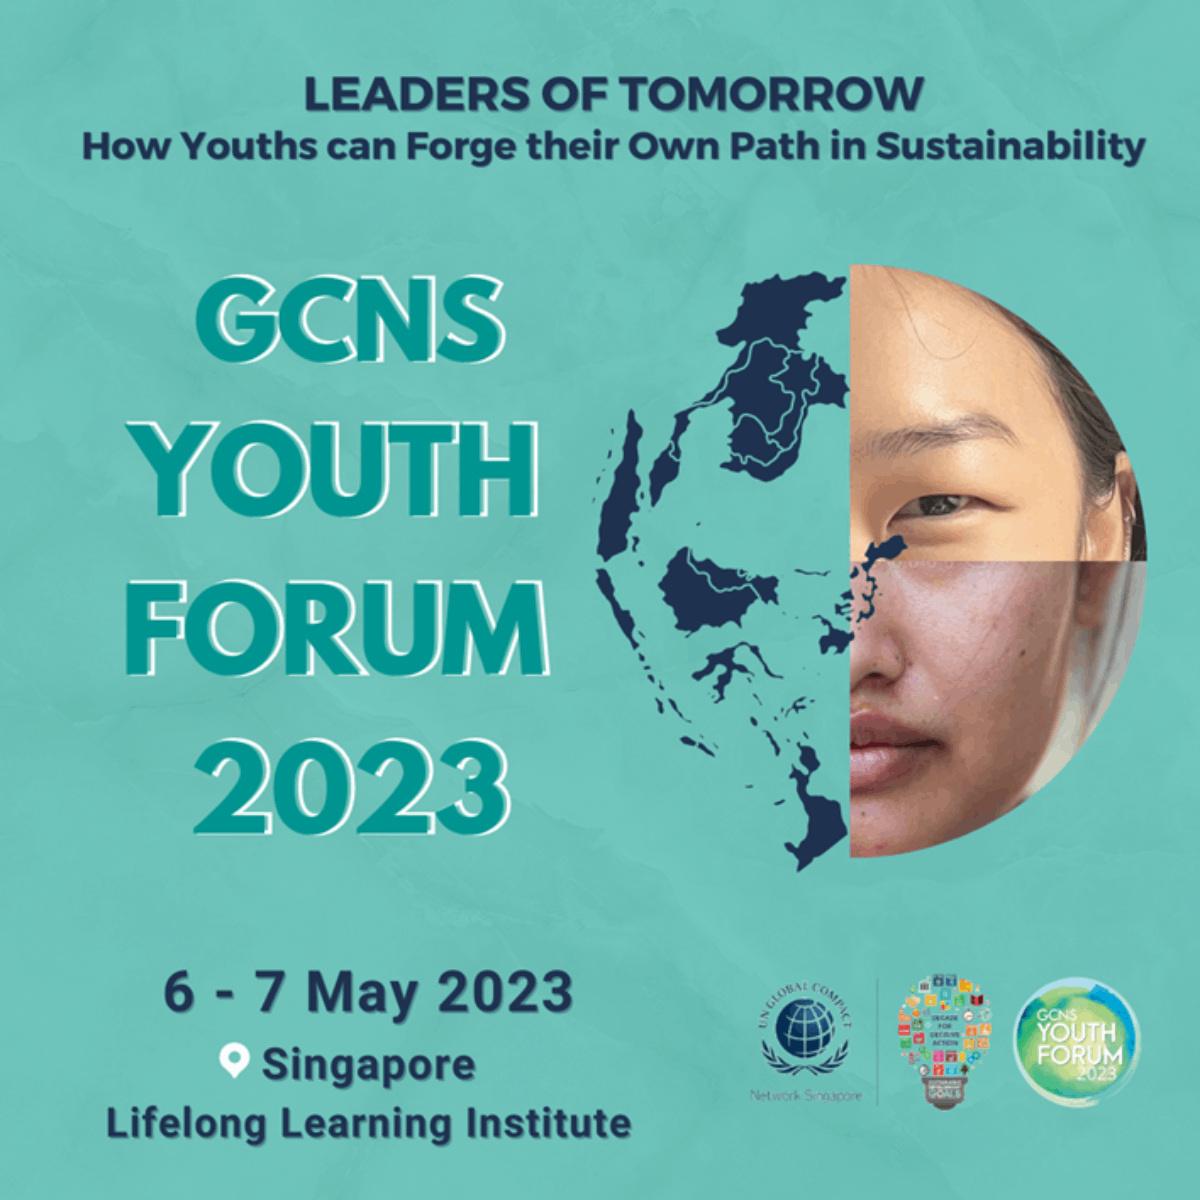 GCNS Youth Forum 2023 EDM image